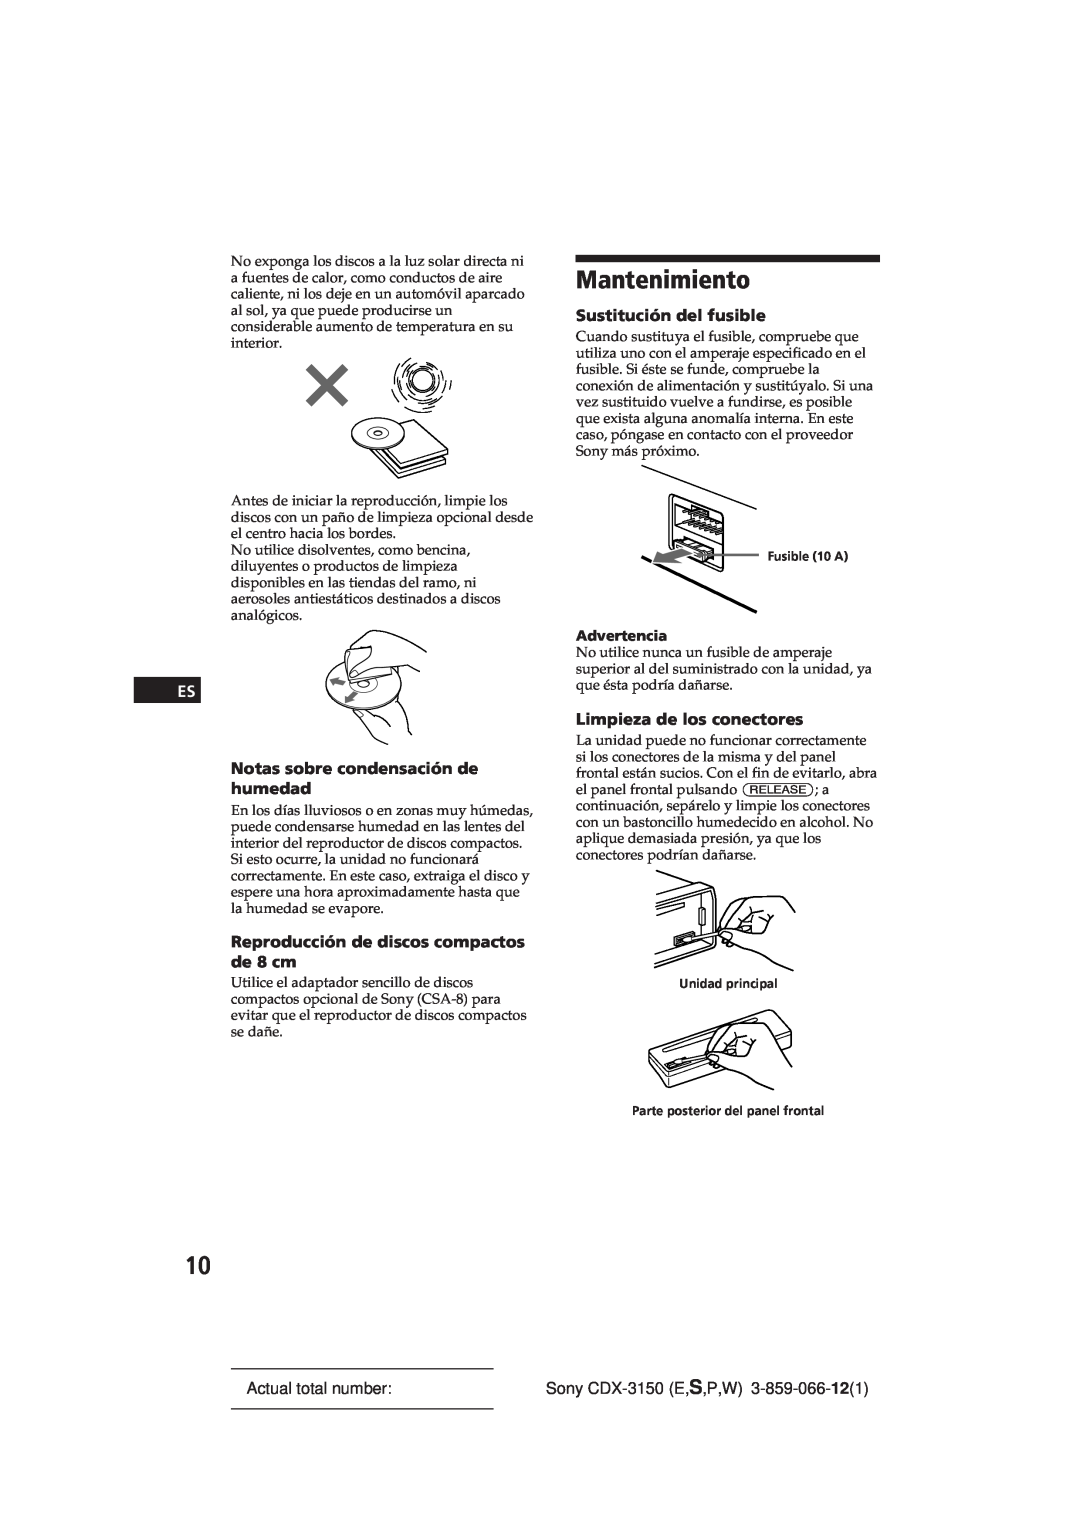 Sony CDX-3150 manual Mantenimiento, Notas sobre condensación de humedad, Reproducción de discos compactos de 8 cm 